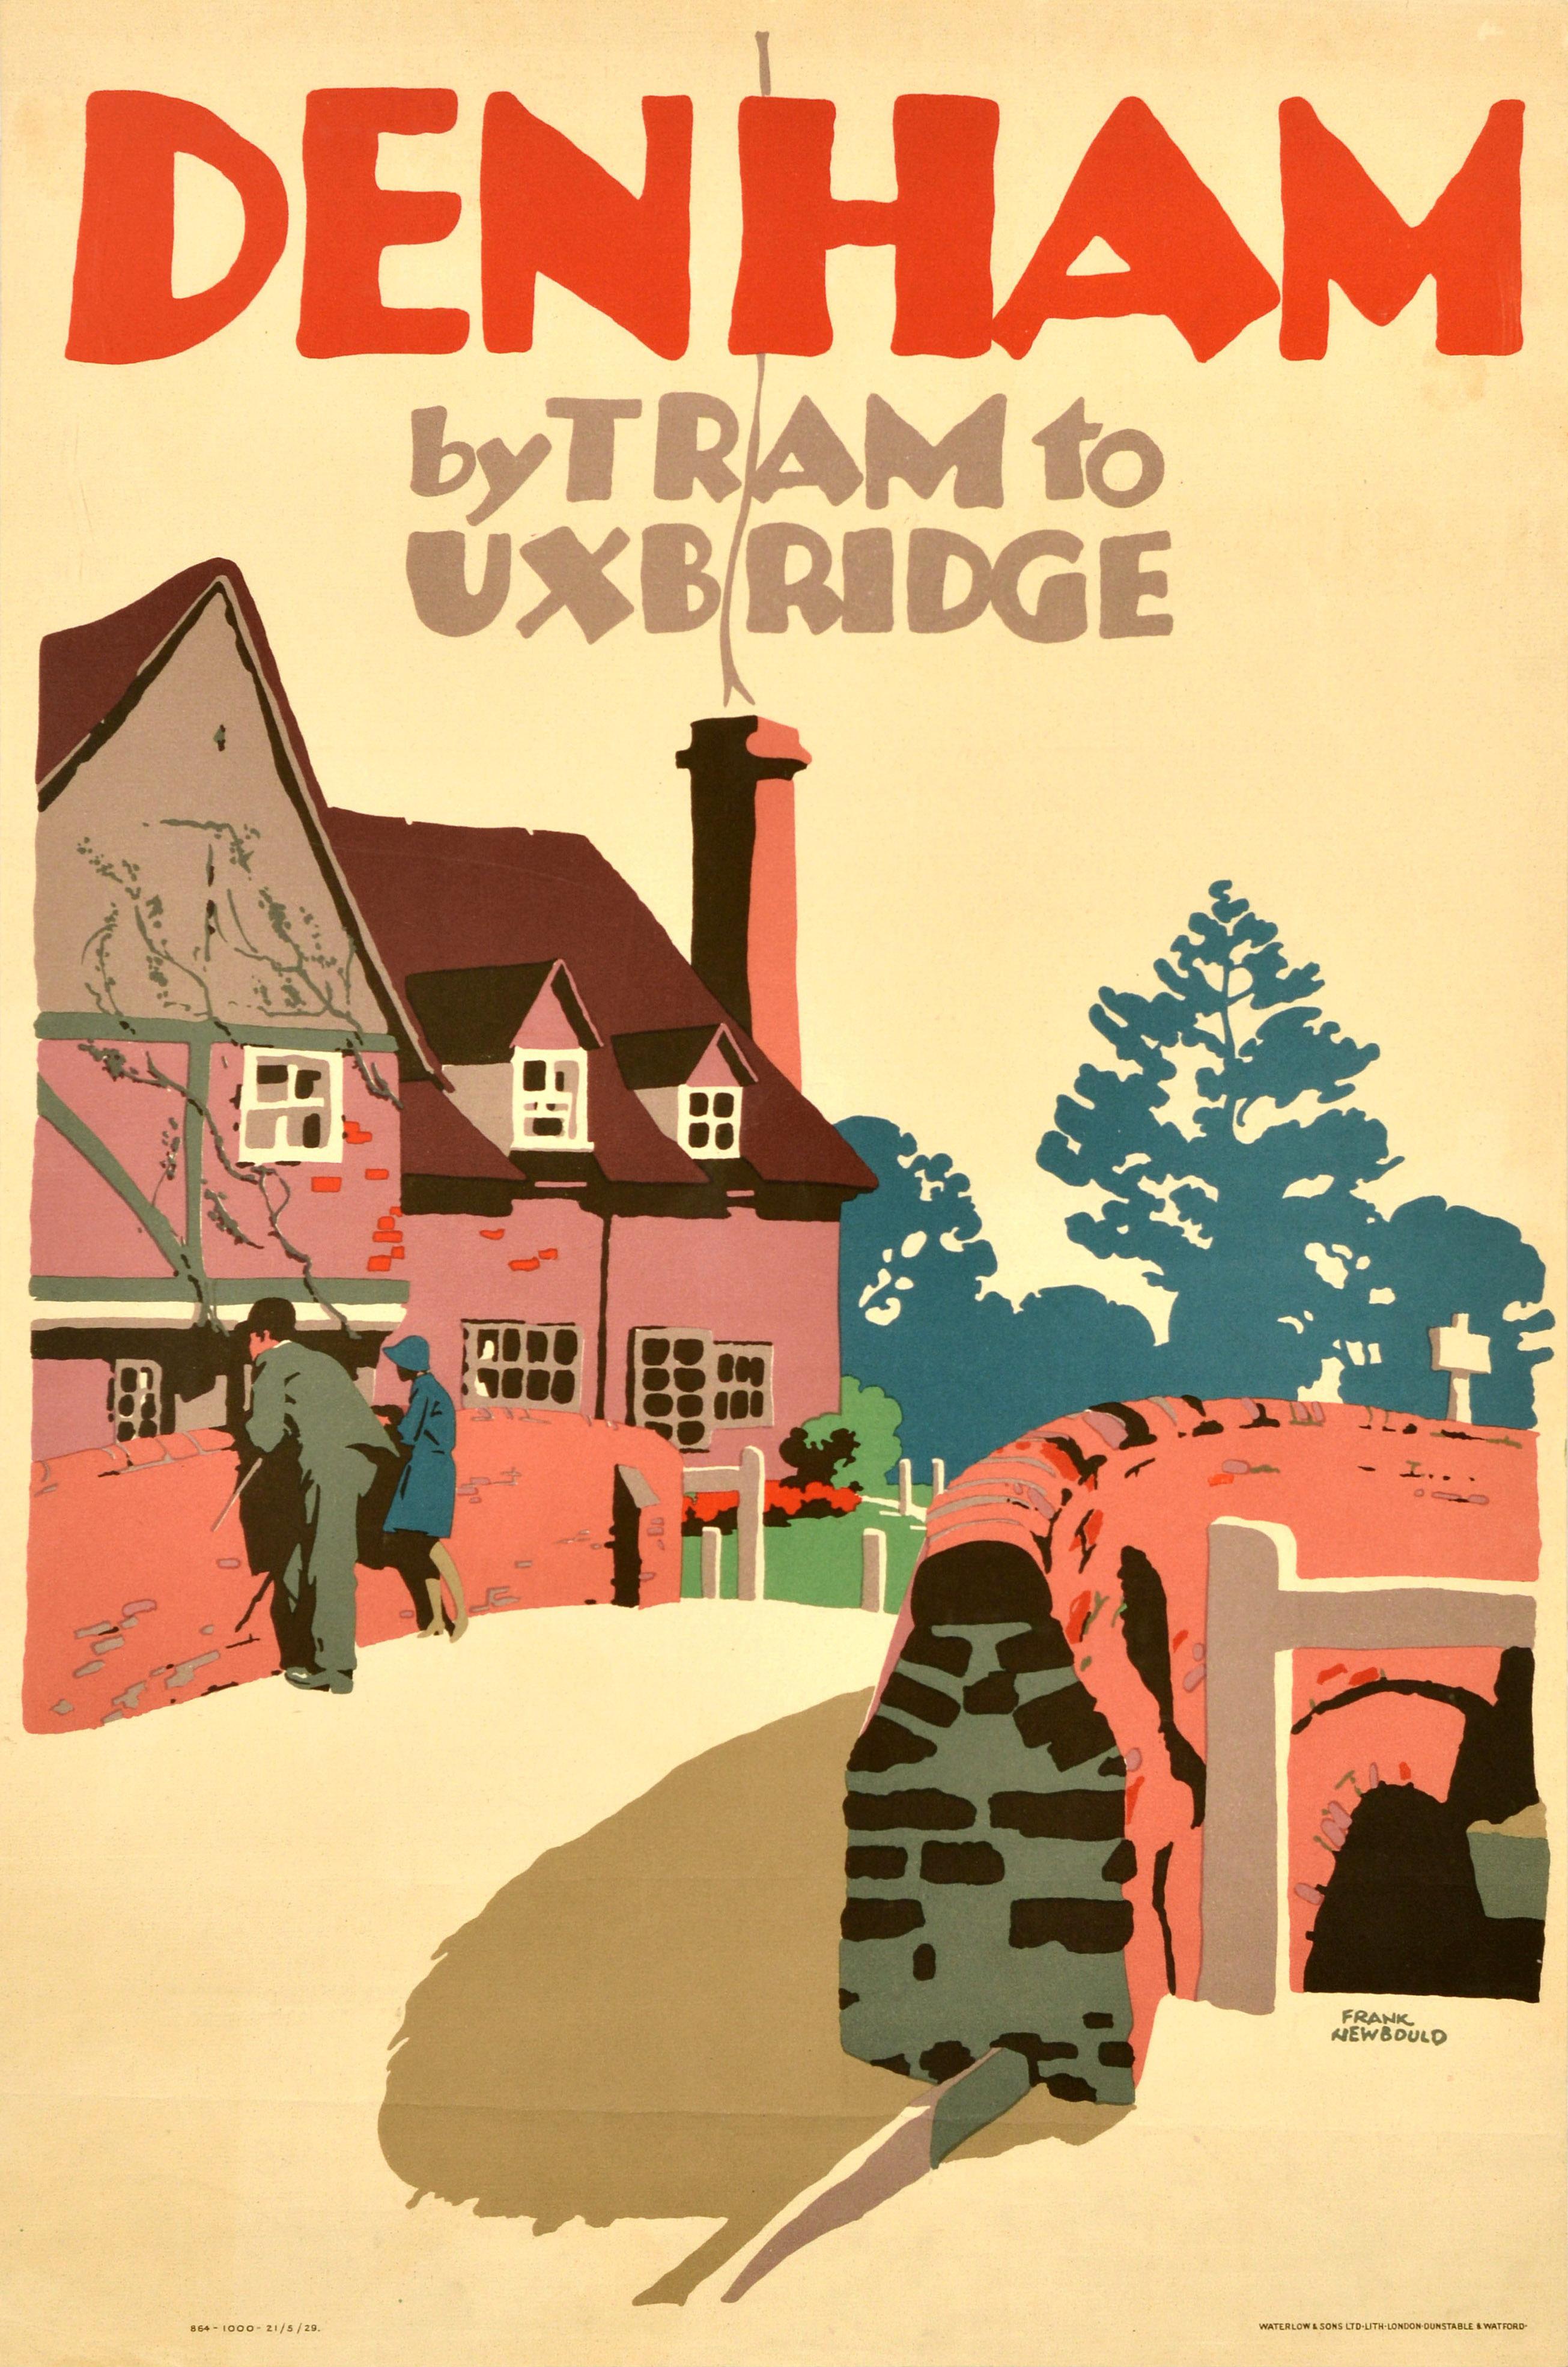 Affiche de voyage originale - Denham by Tram to Uxbridge - comportant une image colorée du célèbre affichiste britannique Frank Newbould (1887-1951) représentant une femme et un homme debout sur un pont de pierre avec une clôture au premier plan et